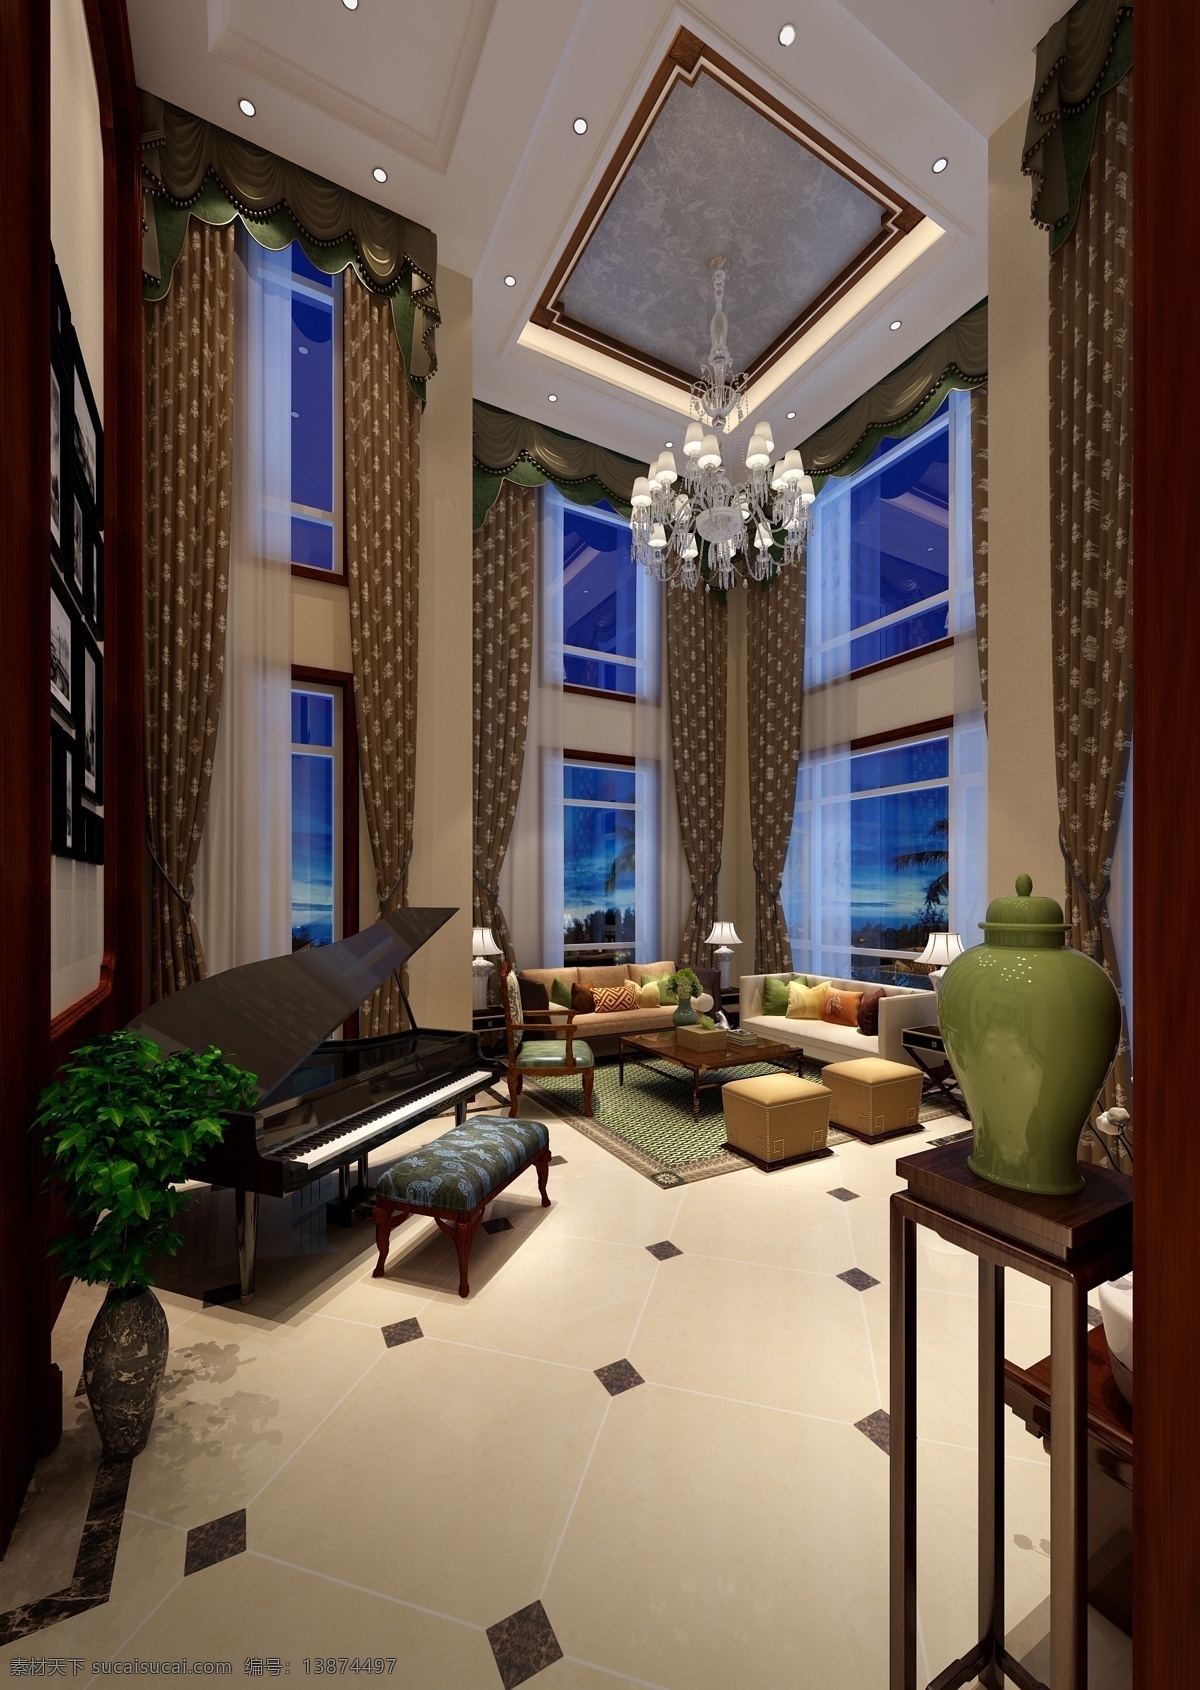 现代 时尚 风格 客厅 钢琴 室内装修 效果图 瓷砖地板 绿色花瓶 格子窗帘